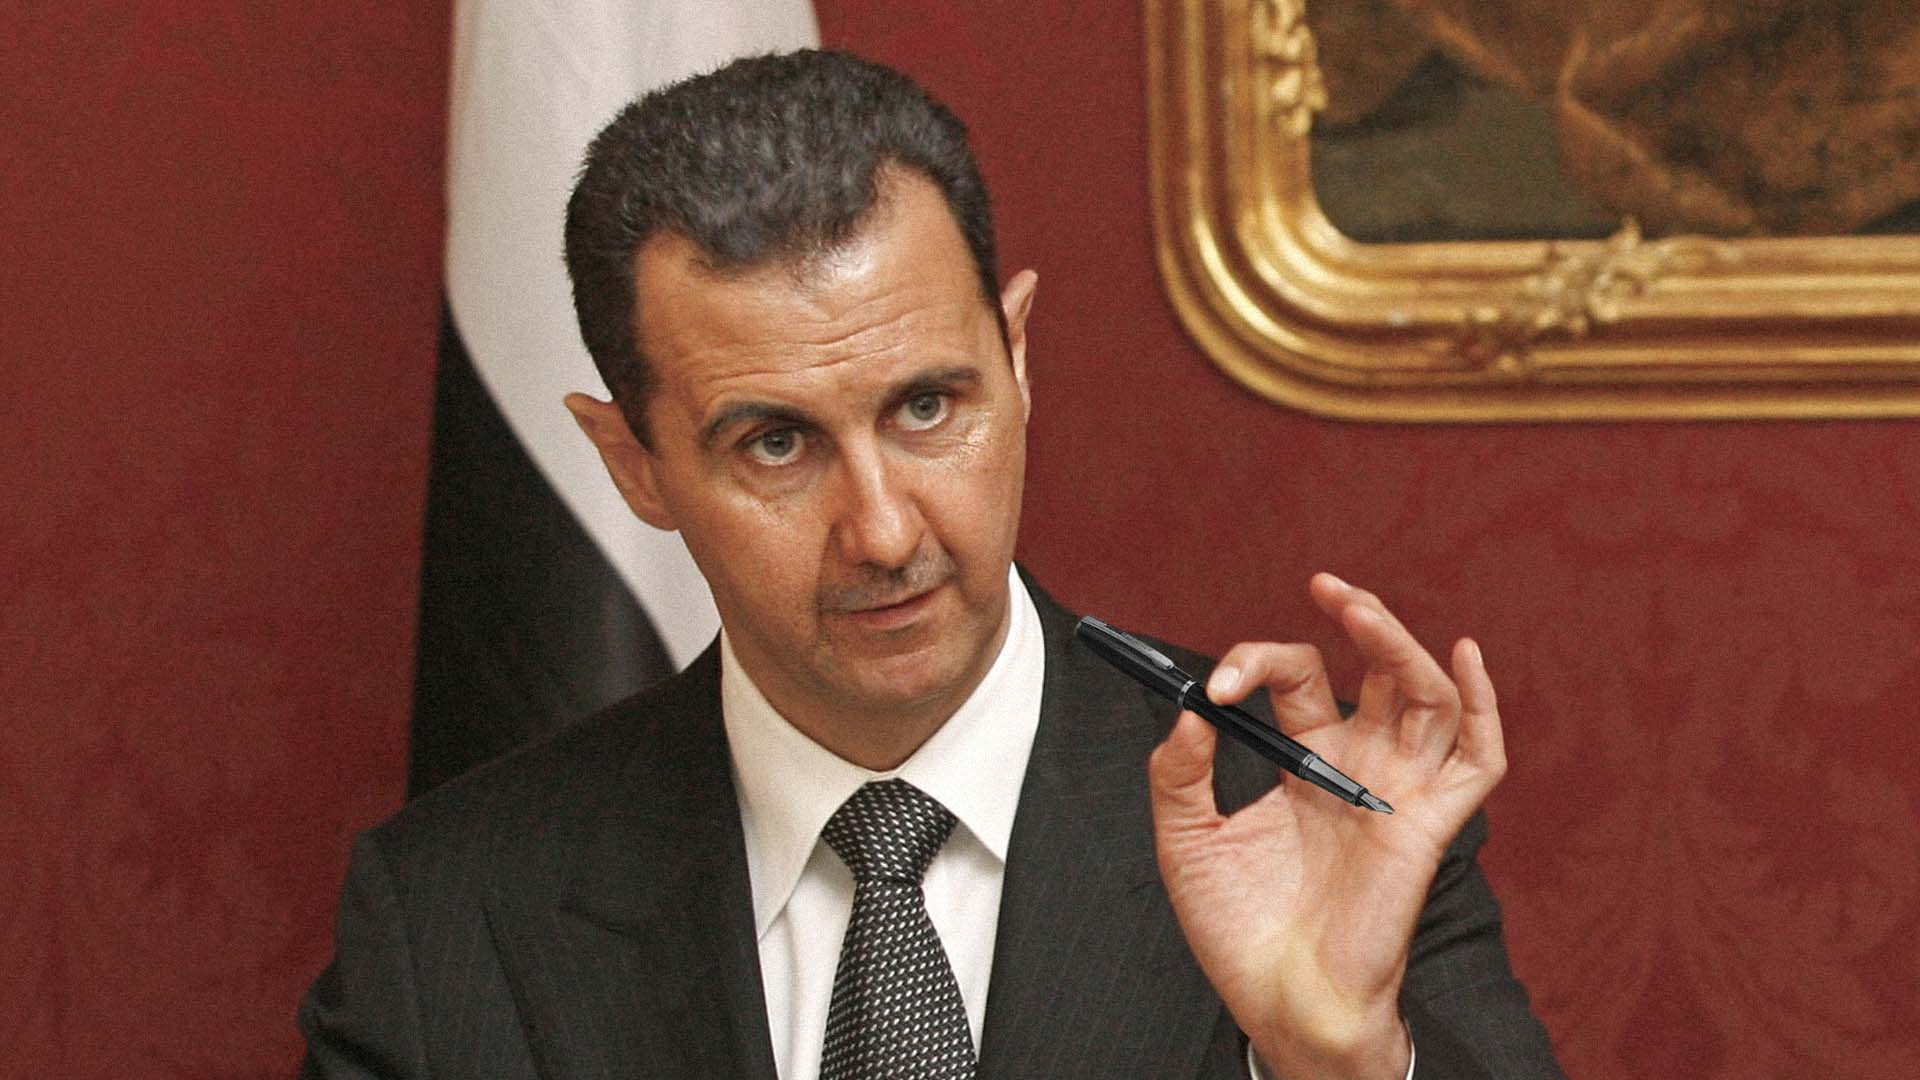 صورة "تنحَّ يا زيلينسكي وجنّب شعبك ويلات الحرب" بقلم الدكتور بشار الأسد